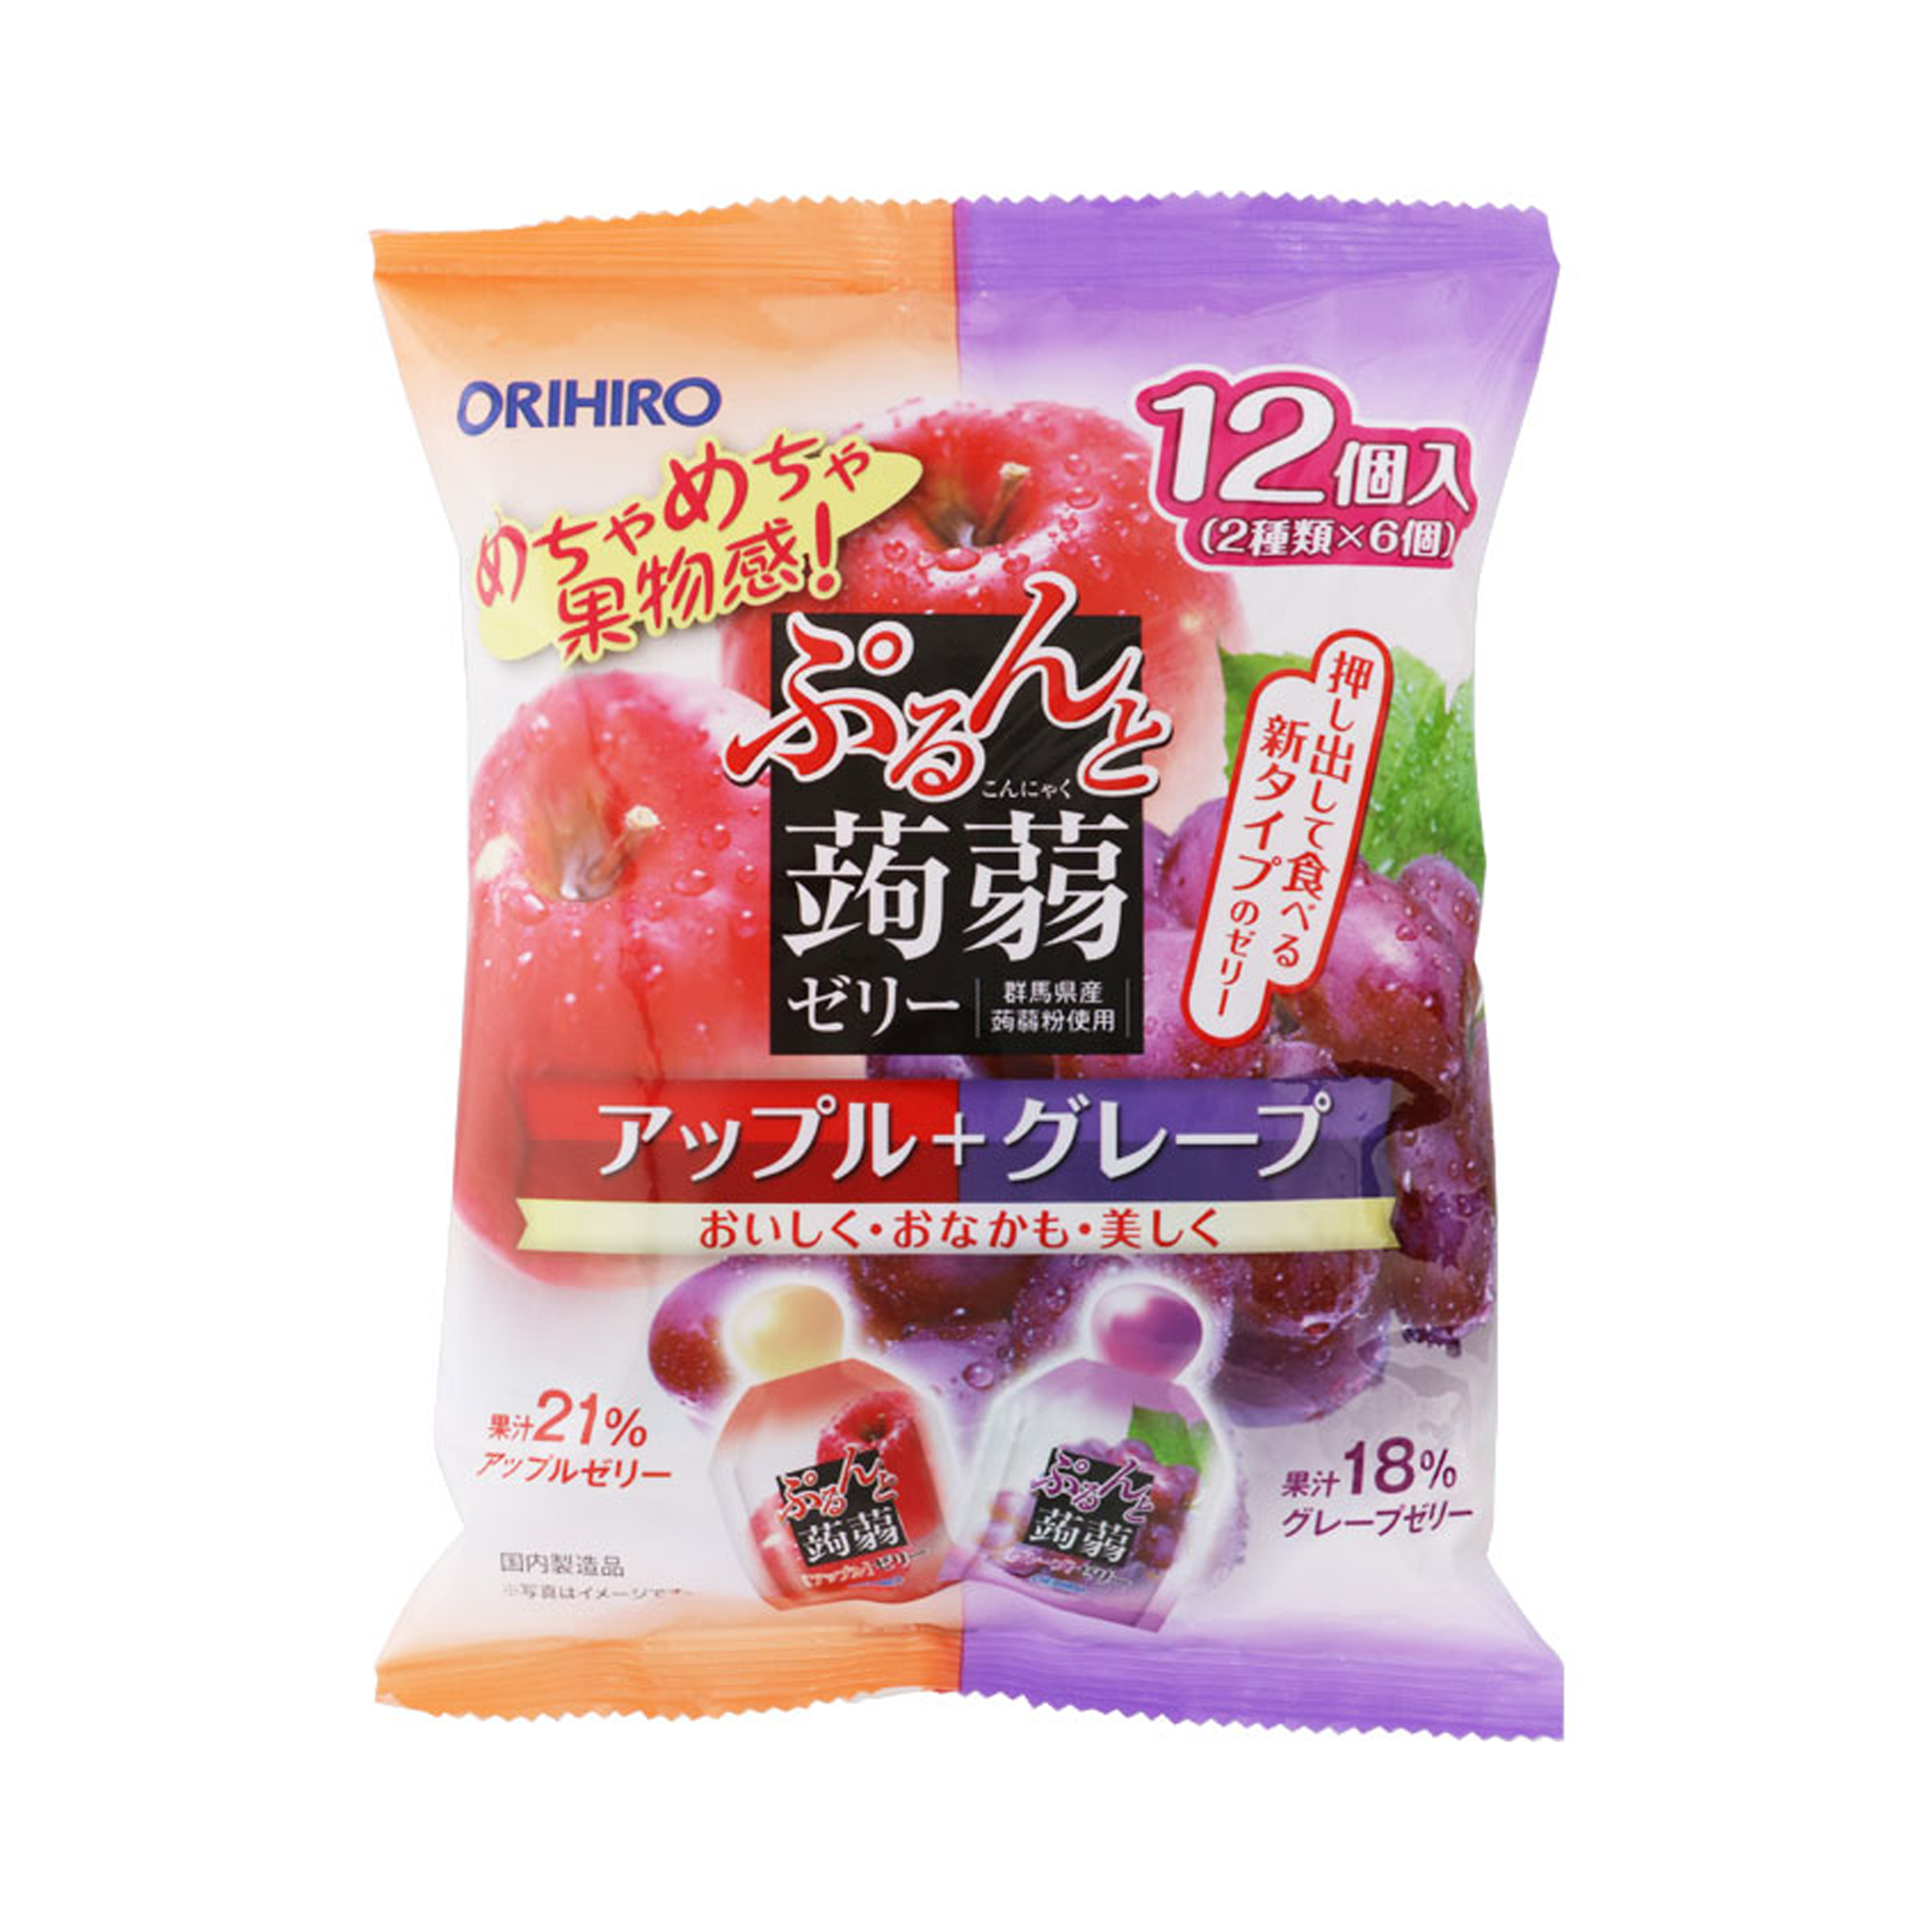 ORIHIRO 蒟蒻果冻 挤挤袋 苹果＋葡萄味 20g×12袋